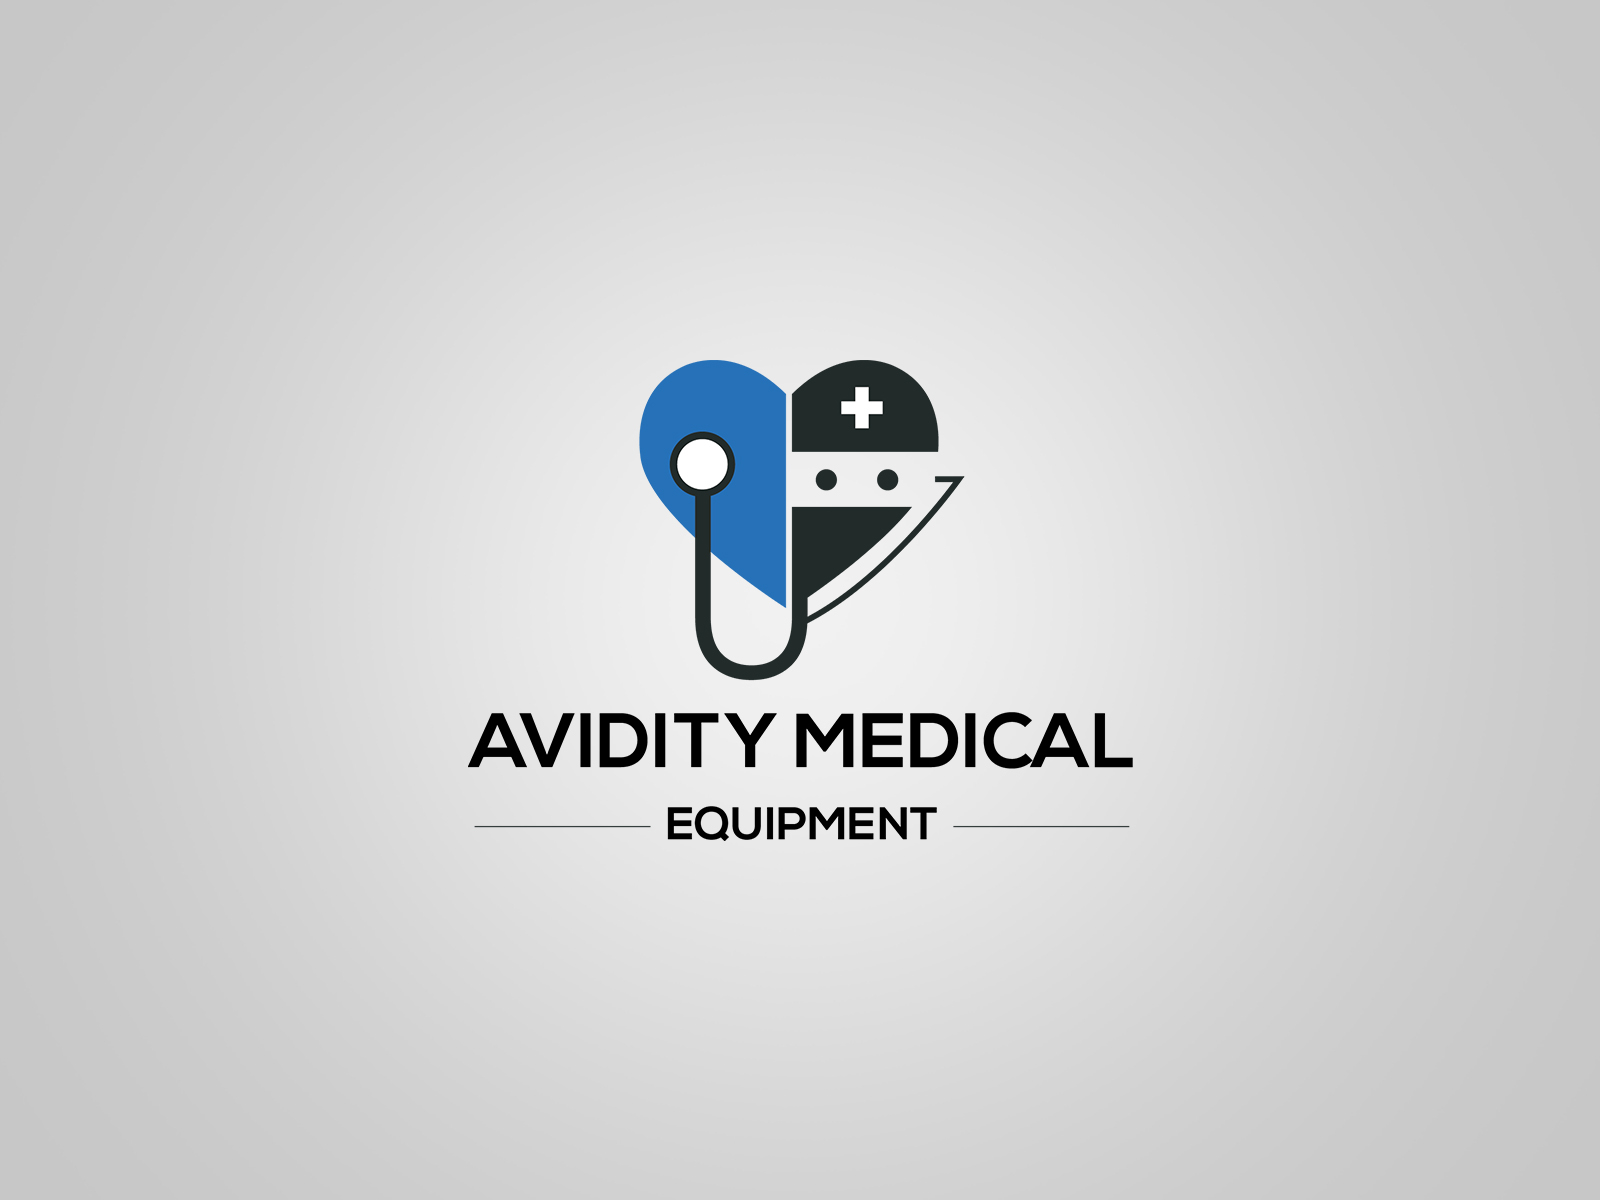 Avidity Medical Equipment Logo Design By Ramjan Hossain On Dribbble